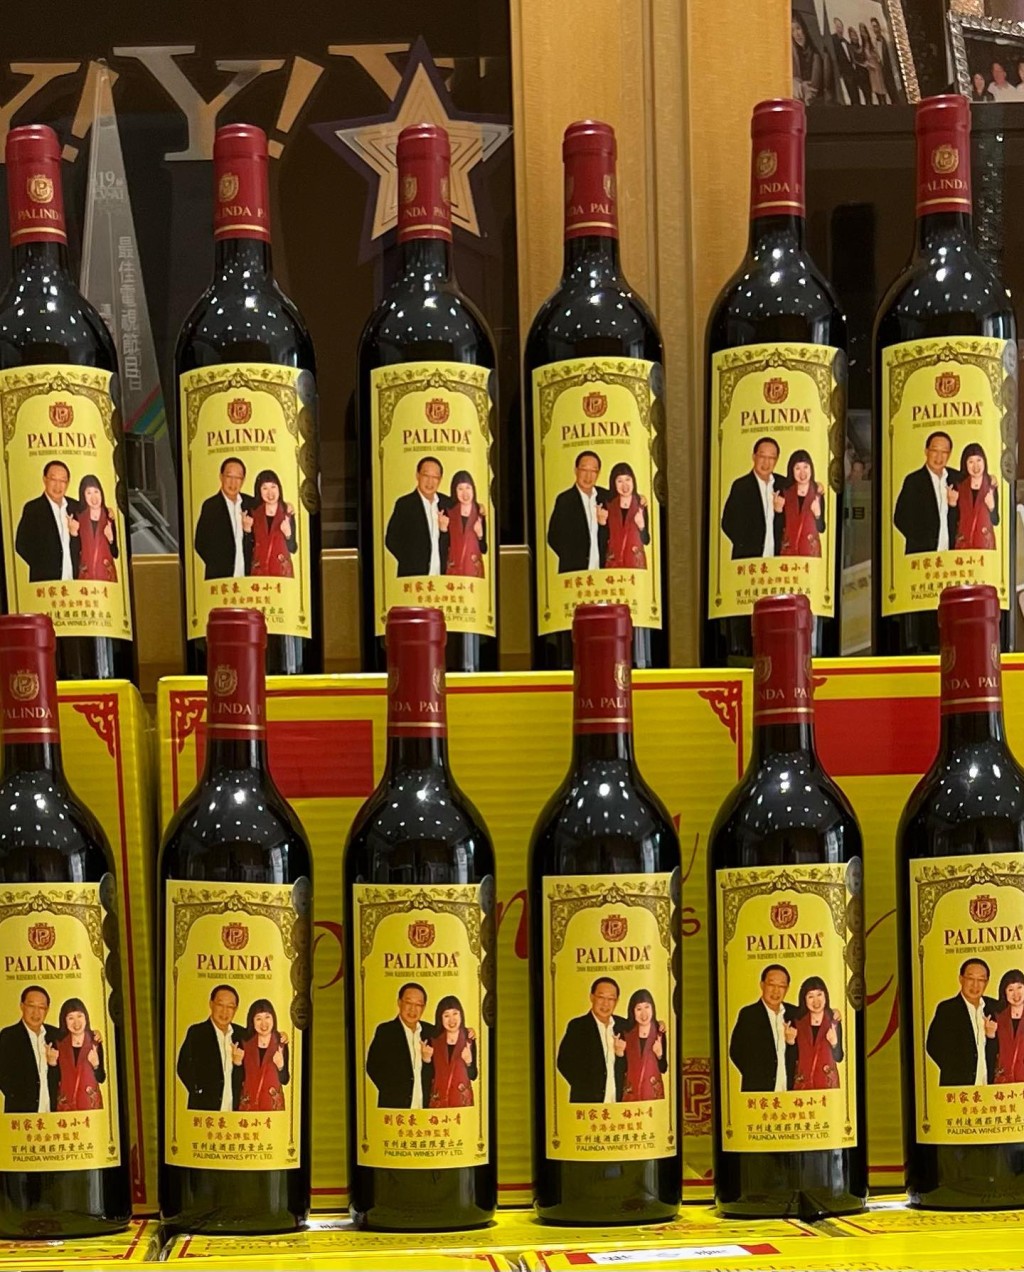 紅酒的標籤印上梅小青與老公劉家豪的肖像。